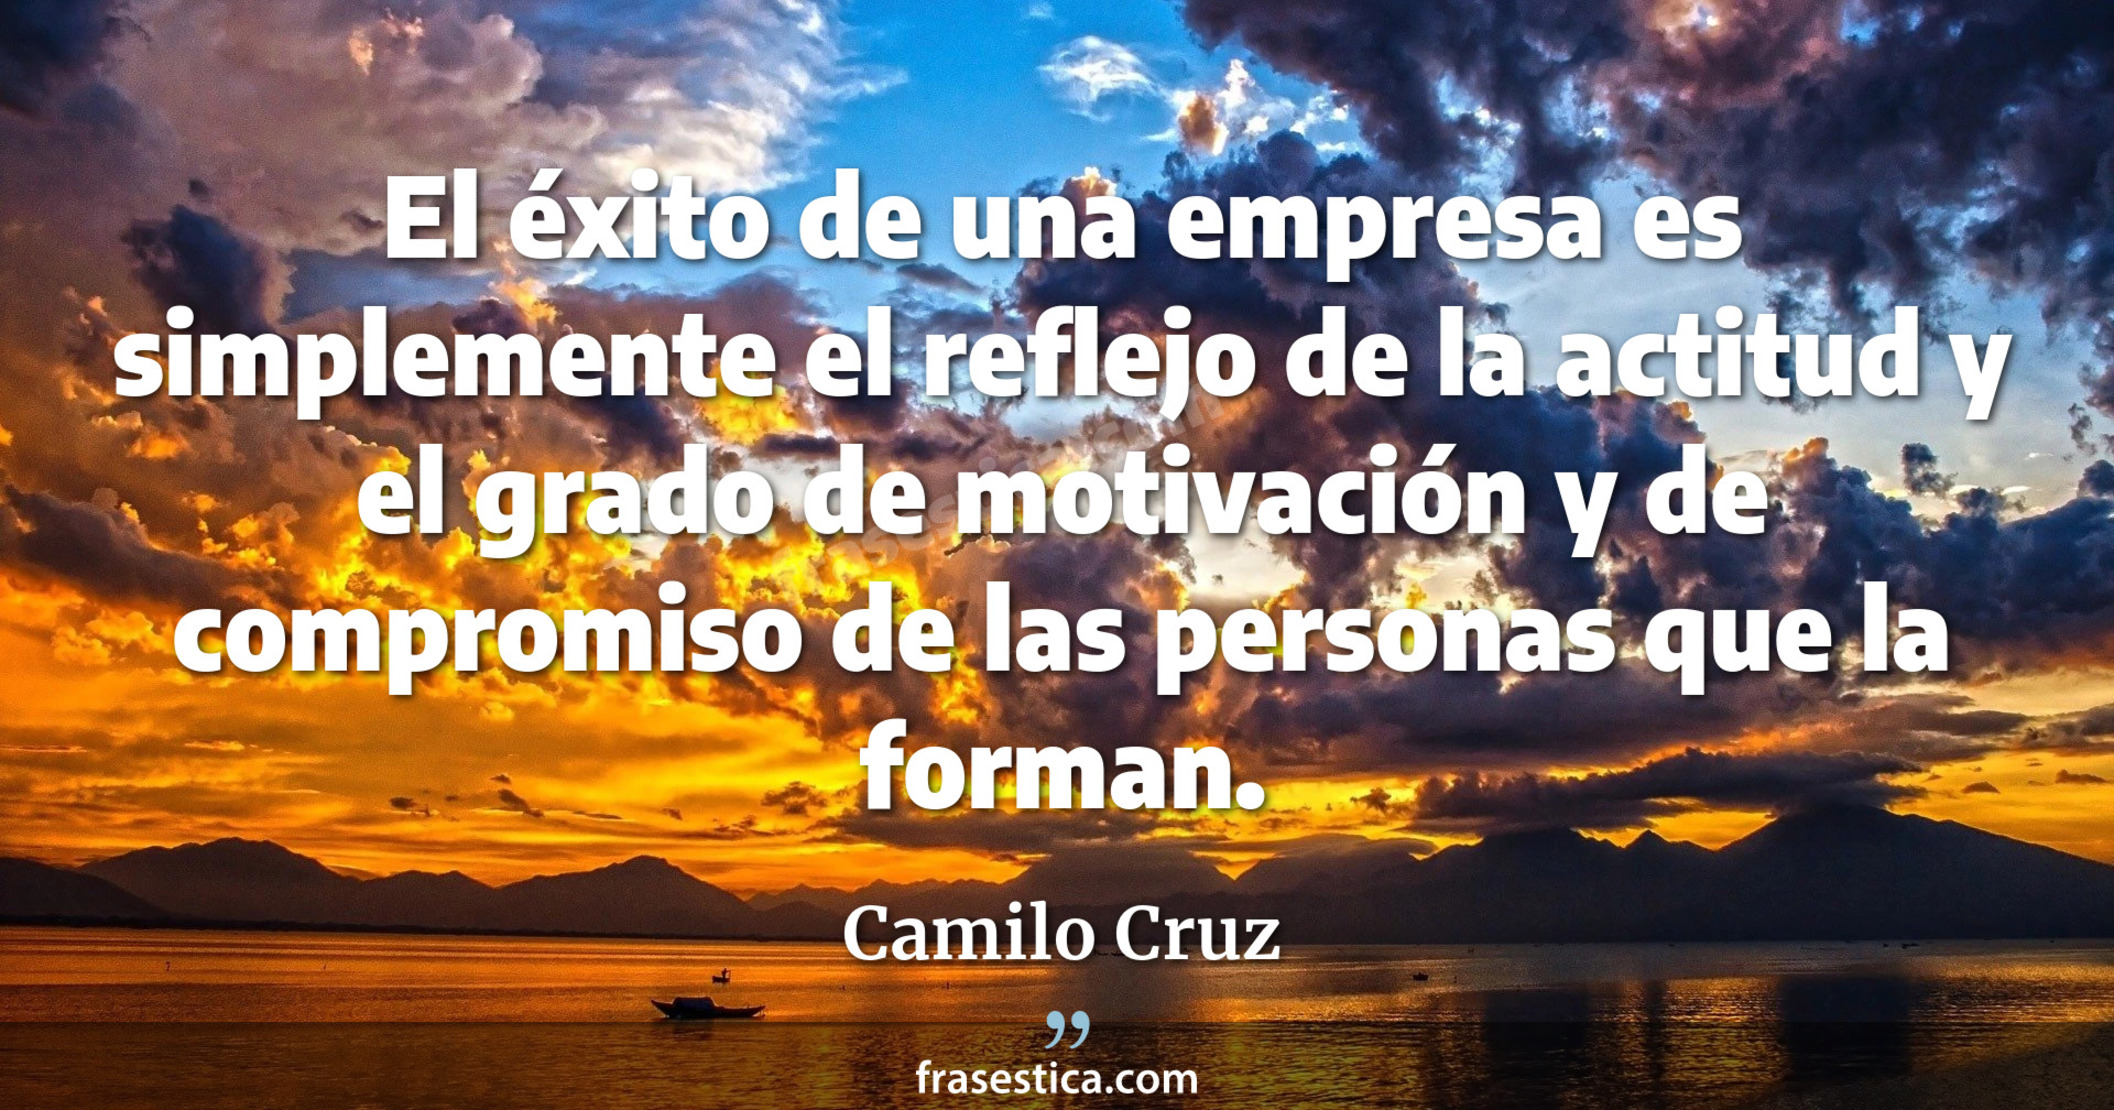 El éxito de una empresa es simplemente el reflejo de la actitud y el grado de motivación y de compromiso de las personas que la forman. - Camilo Cruz